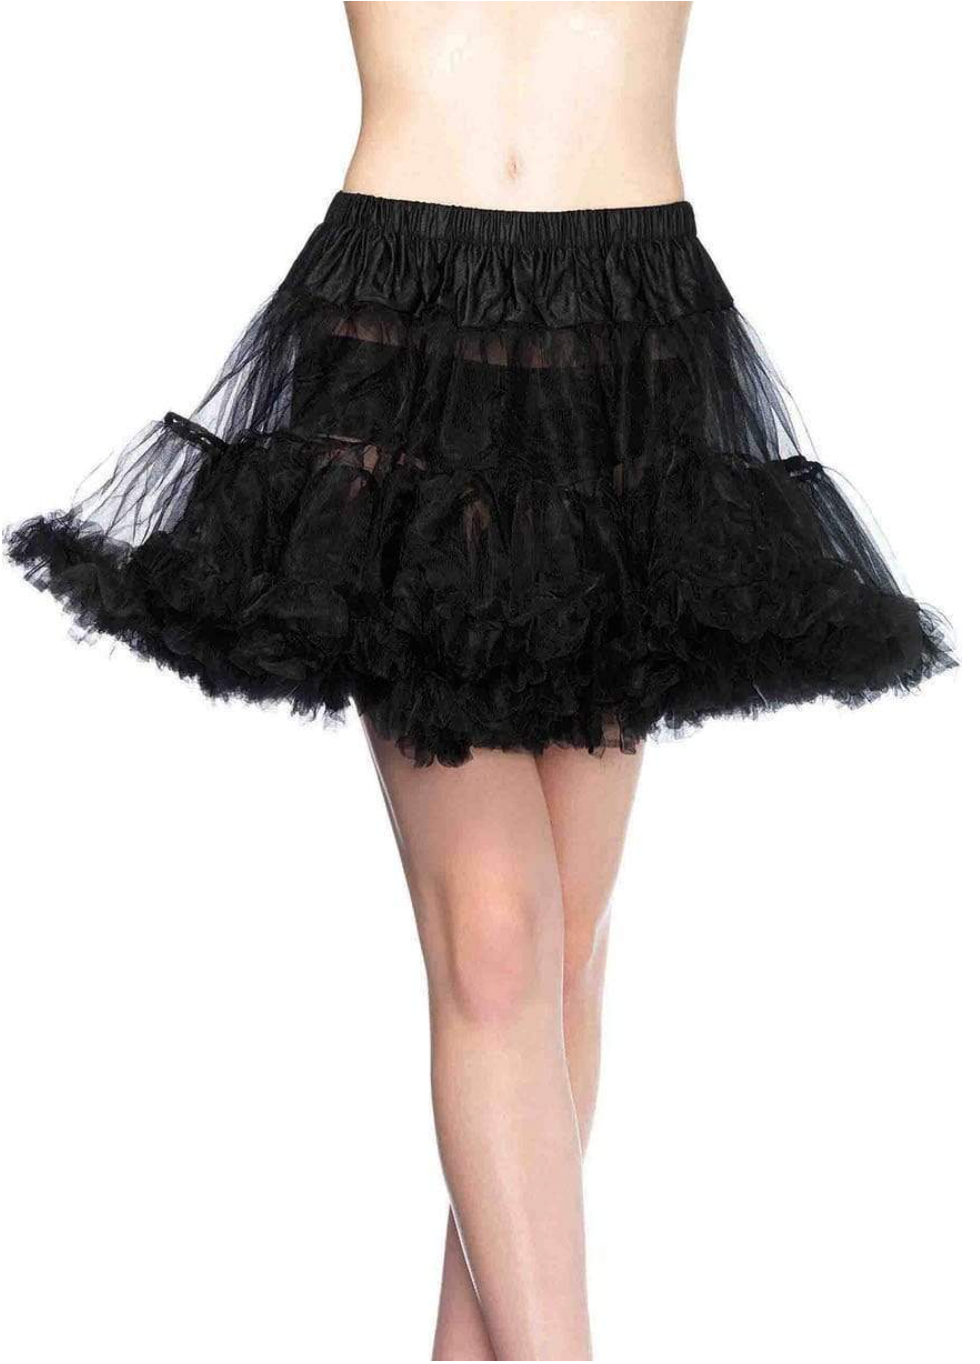 Short Crinoline Petticoat